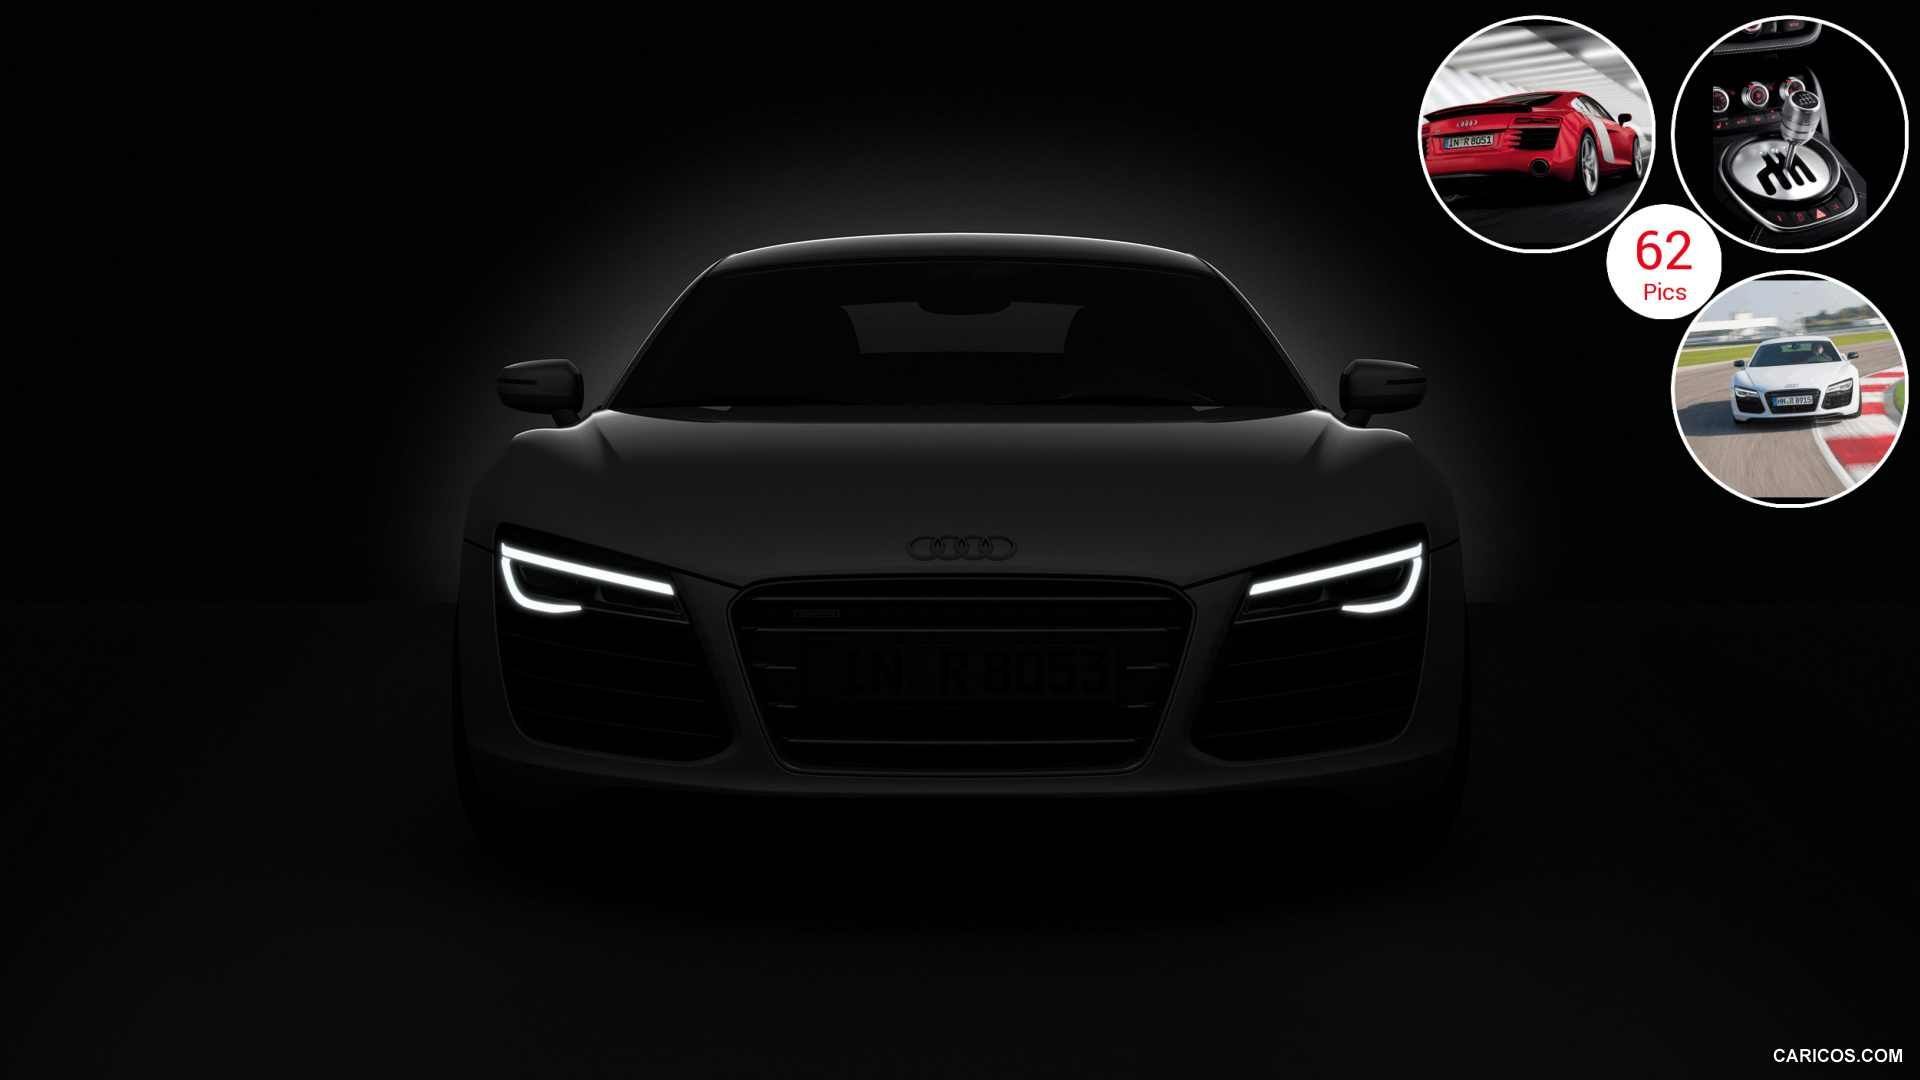 2013 Audi R8 LED Headlights | HD Wallpaper #31 | 1920x1080